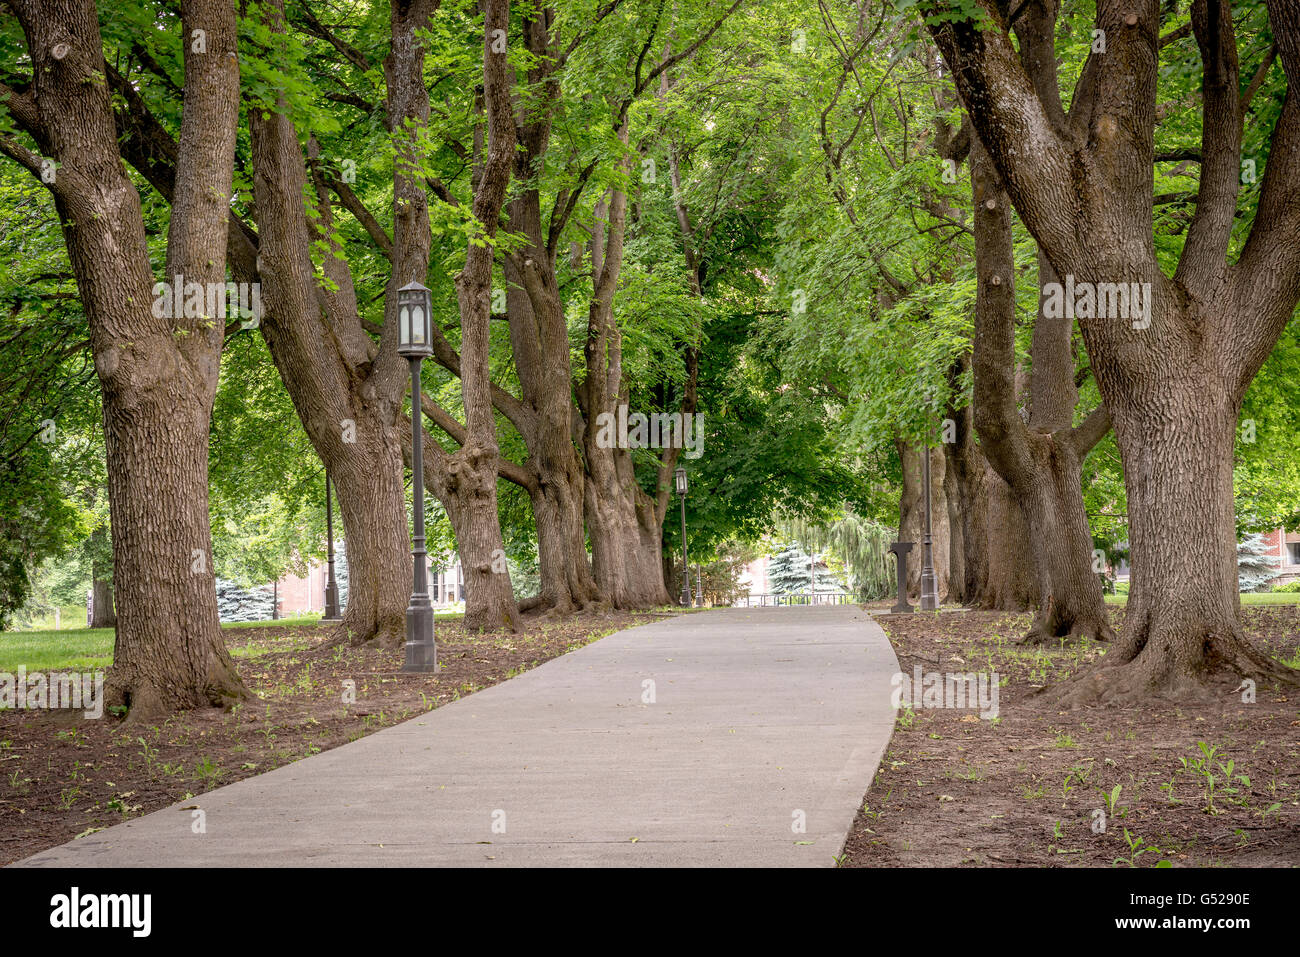 Les arbres alignés alignés un trottoir avec des poteaux d'éclairage Banque D'Images